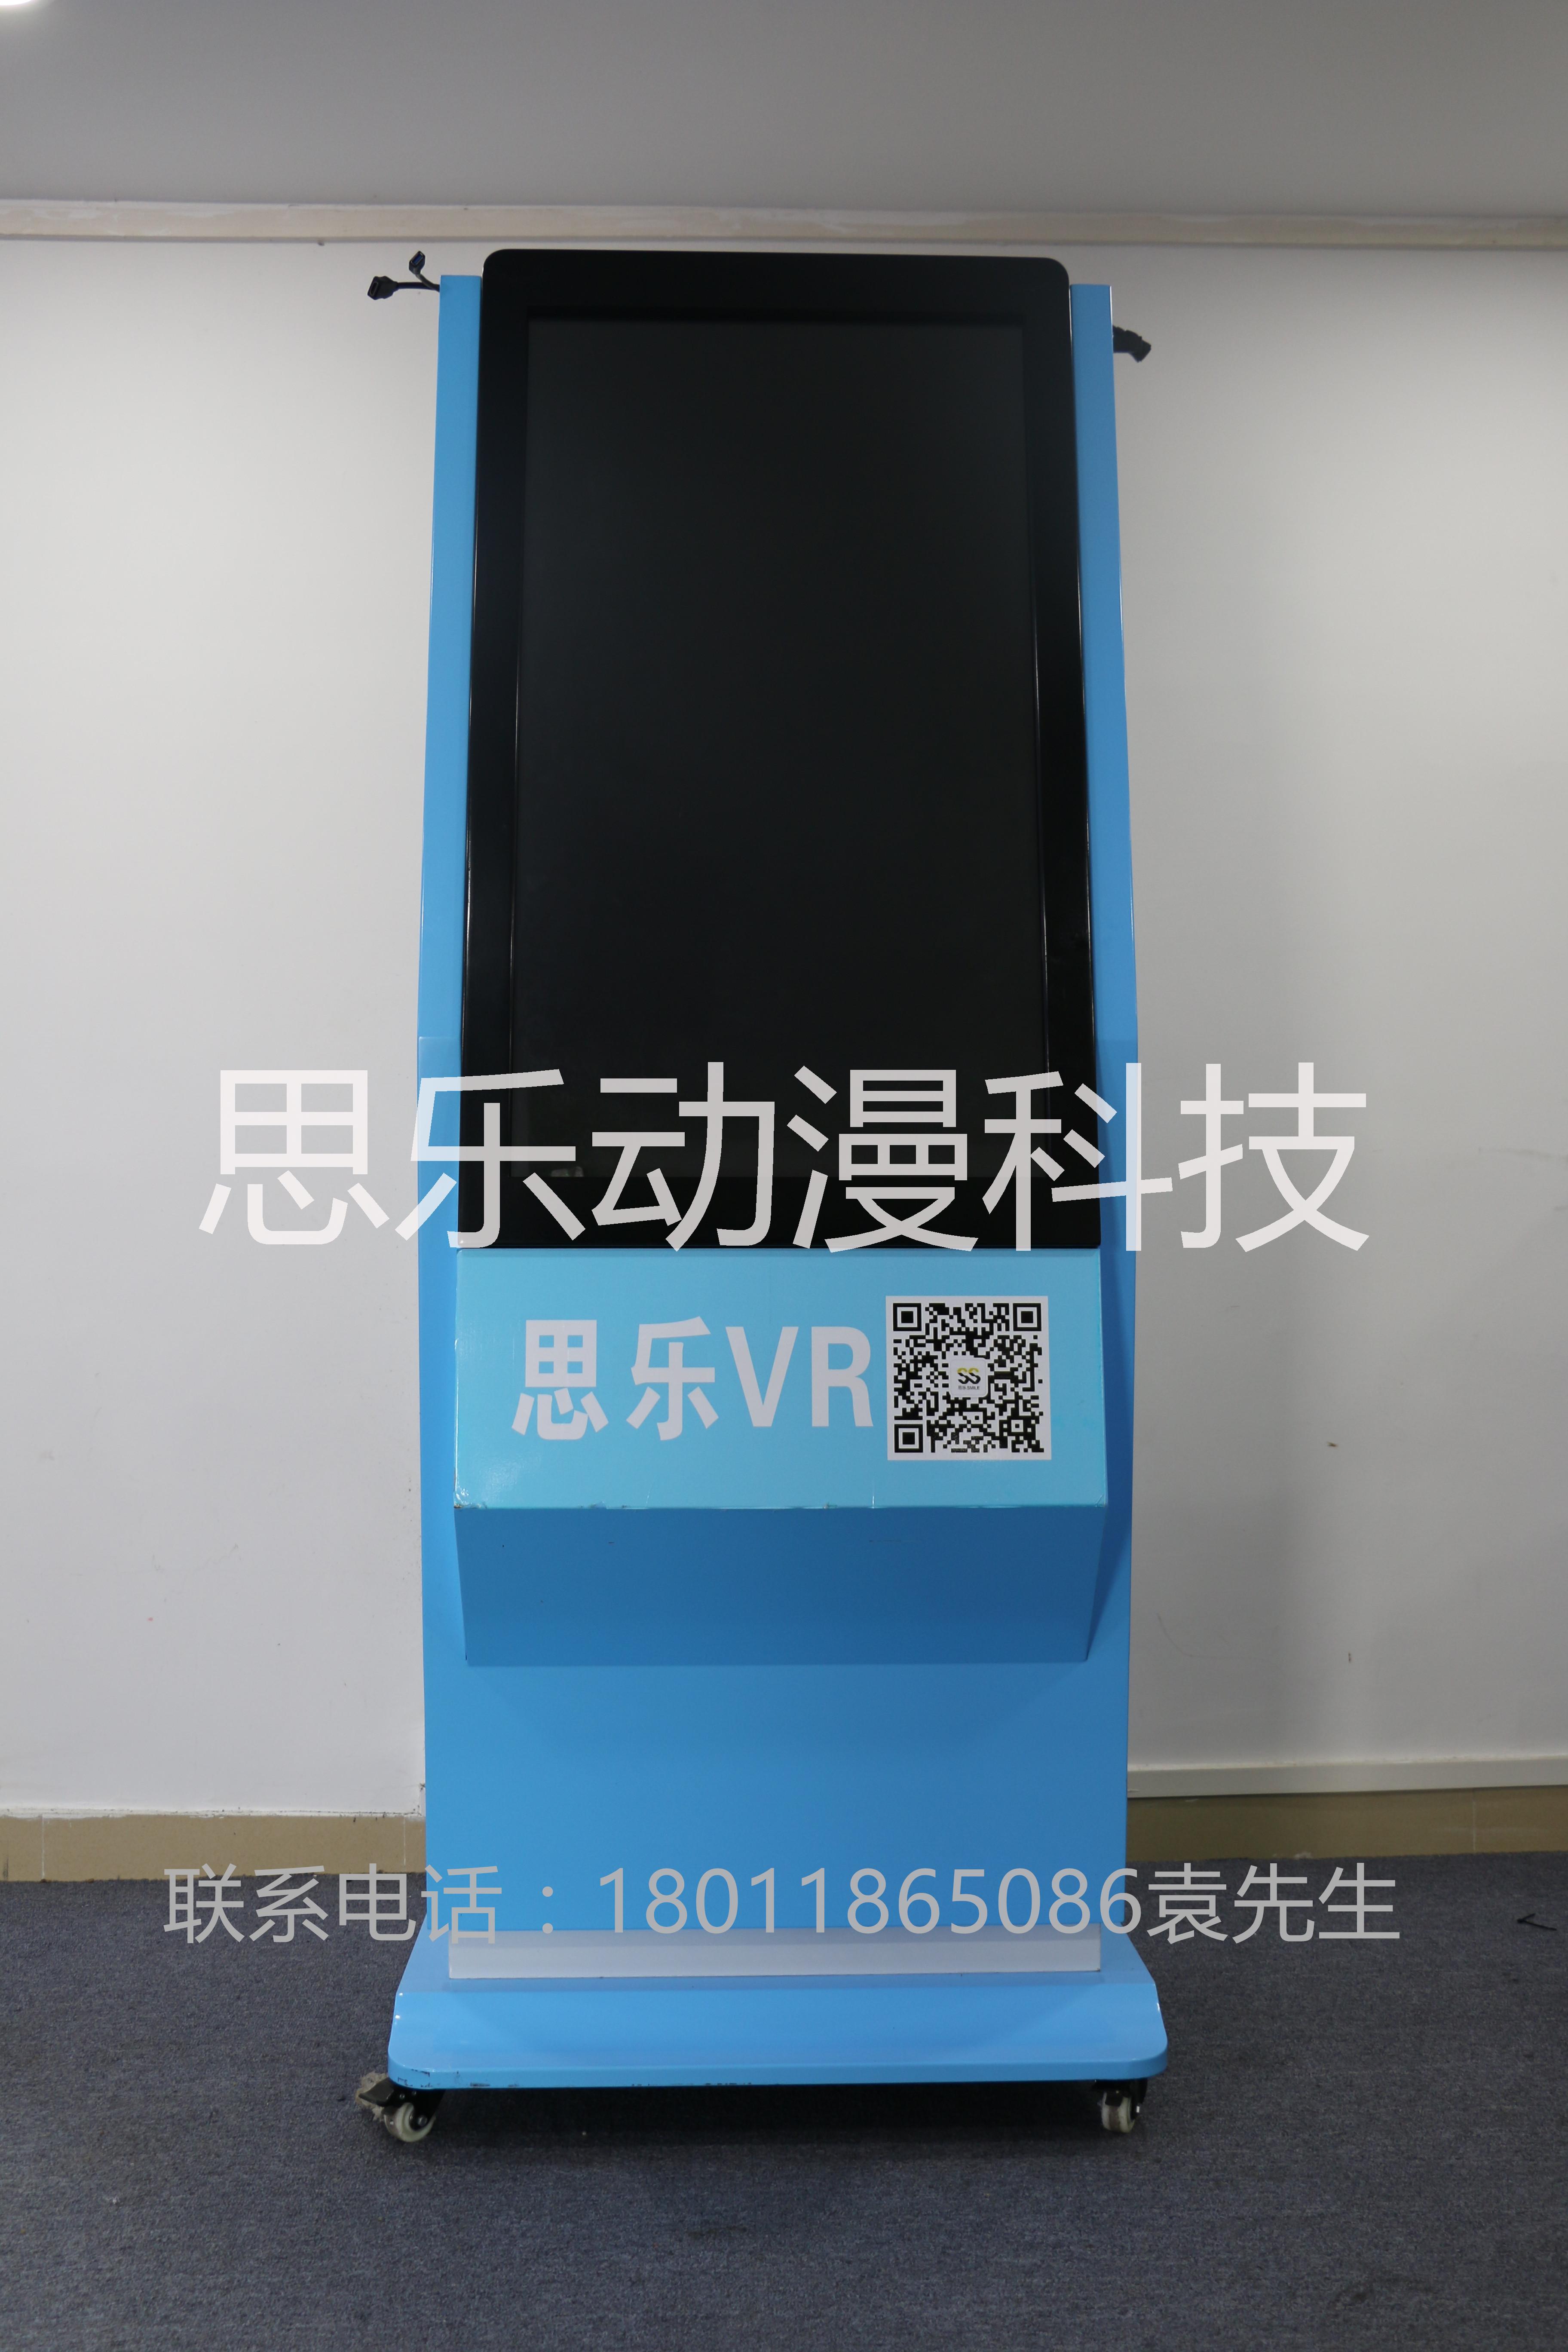 vr体验设备 htc智慧一体机9DVR虚拟现实体验馆设备 VR跑步机自行车 vr智慧一体机